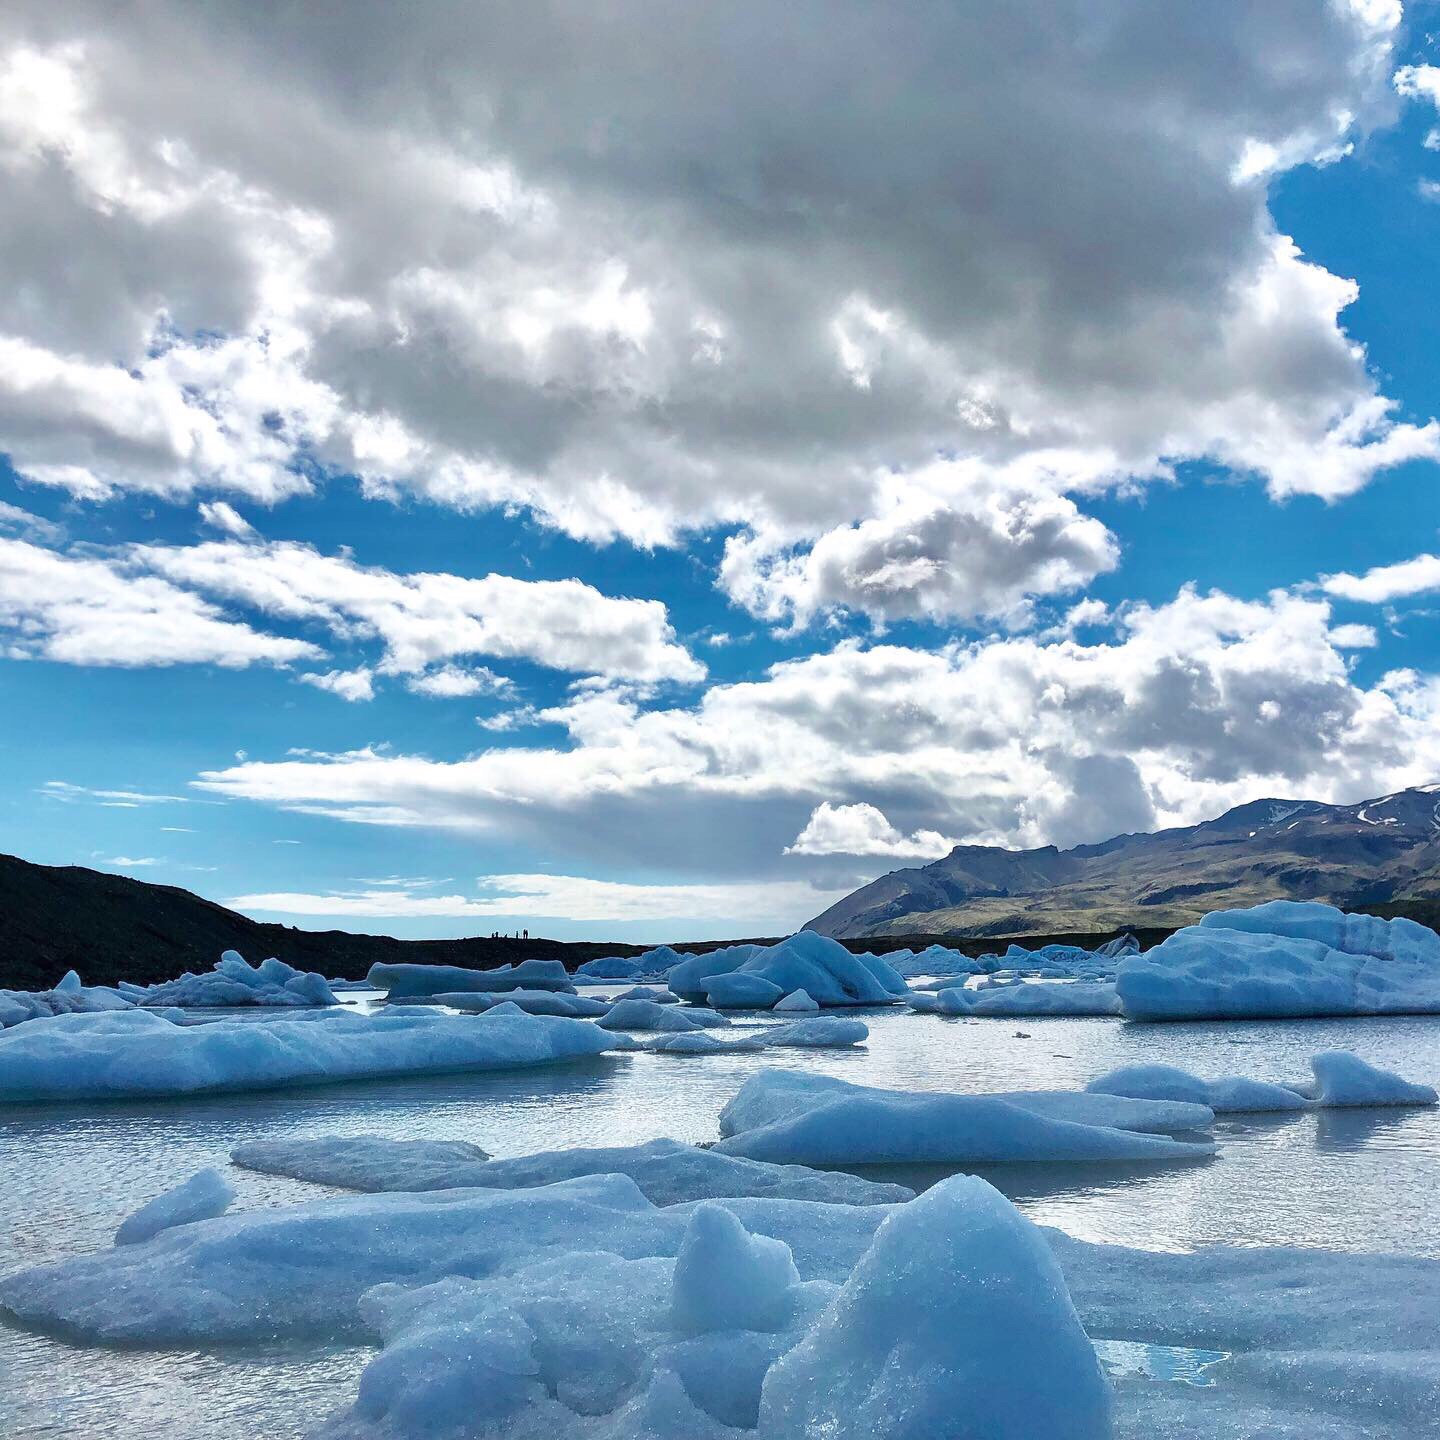 ⛸秘境冰湖 Fjallsarlon ⛄️换上御寒衣搭乘橡皮艇步行到湖岸边，眼前一片蔚蓝、阳光明媚、白